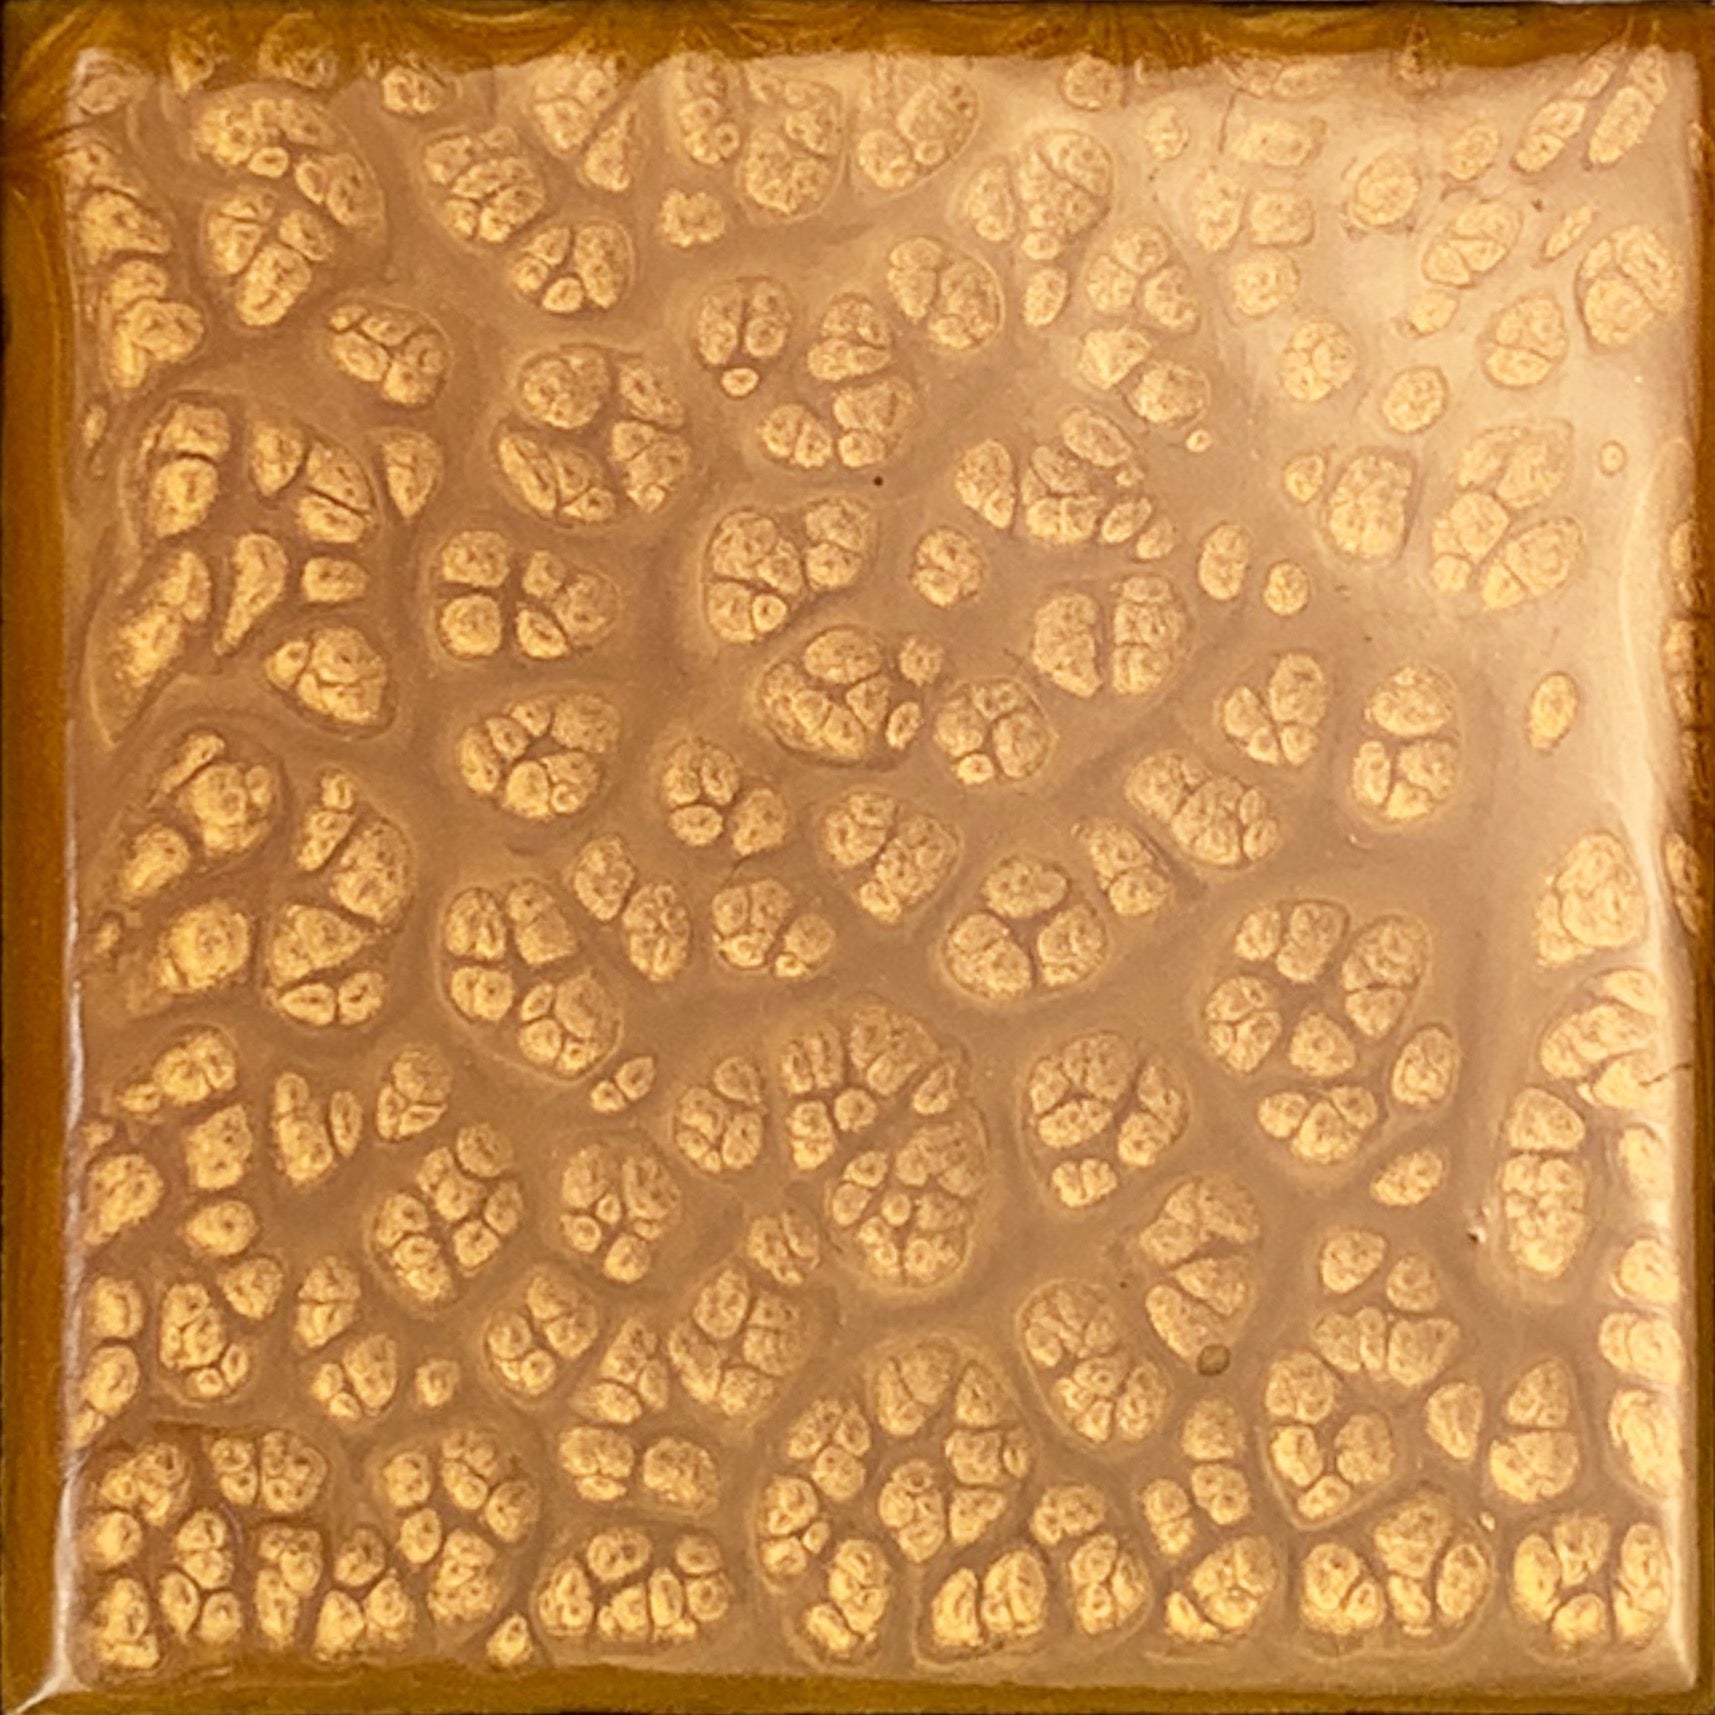 mayan gold epoxy resin.